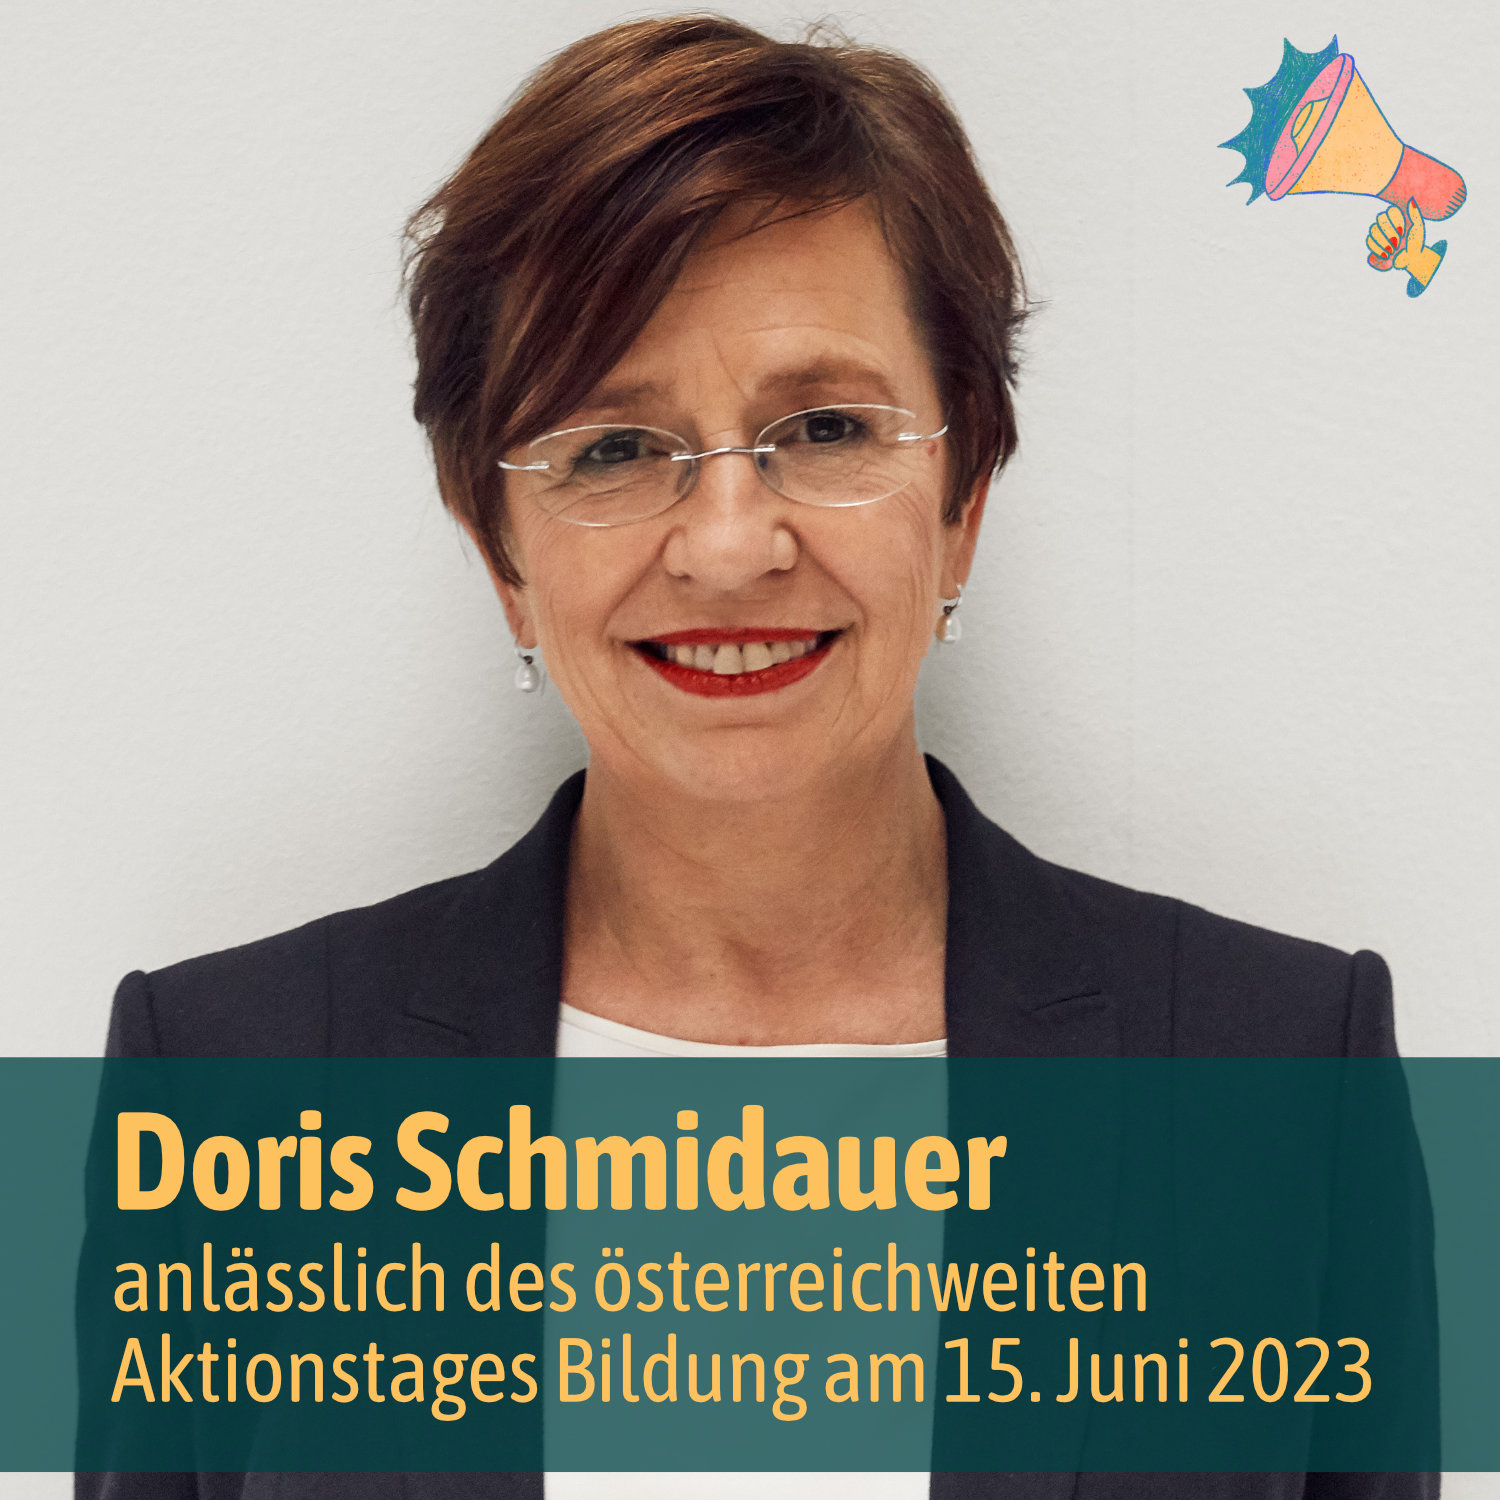 Doris Schmidauer anlässlich des österreichweiten Aktionstages Bildung am 15. Juni 2023